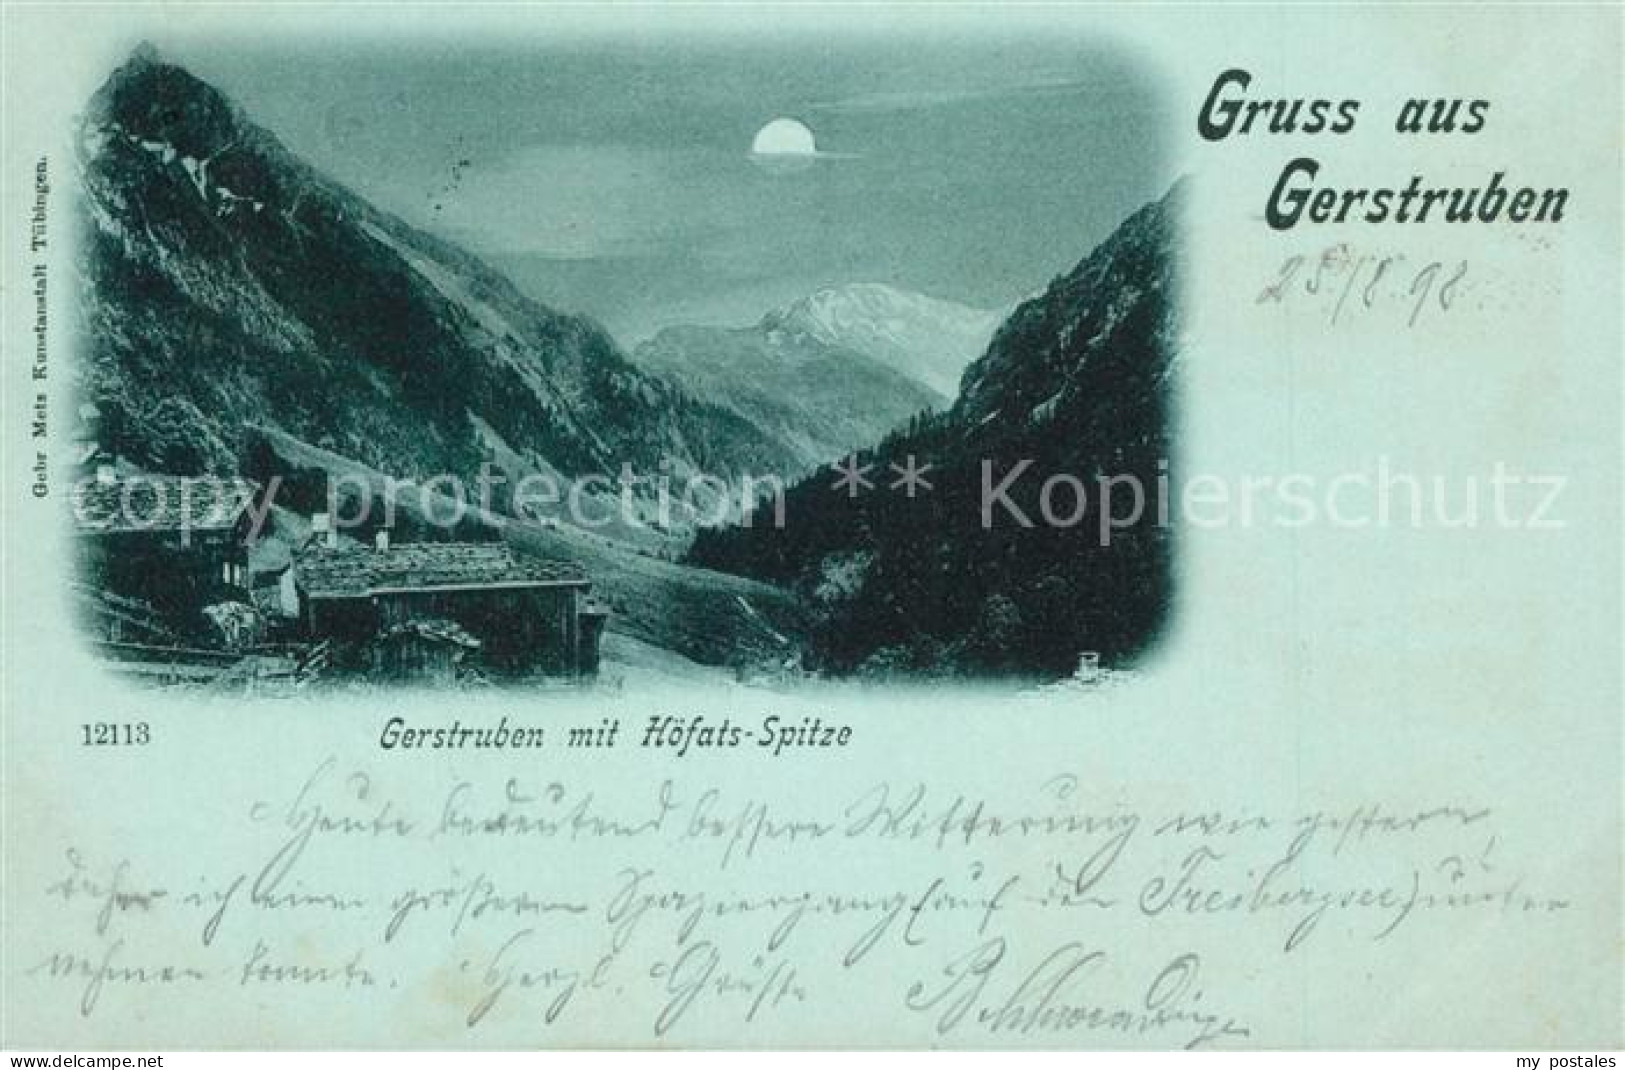 73289922 Gerstruben Hoefatsspitze Mondschein Gerstruben - Oberstdorf